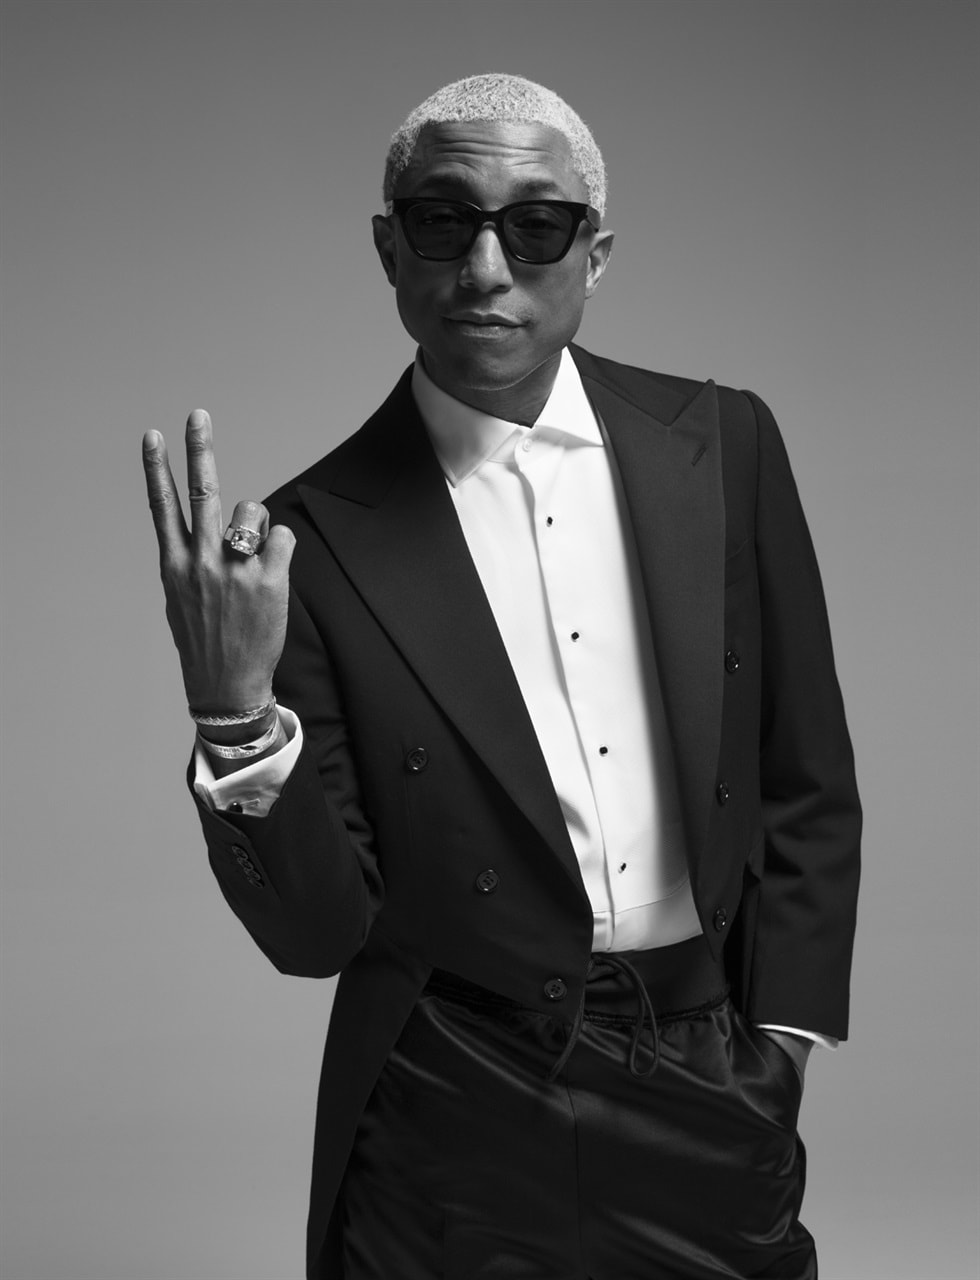 Pharrell Williams Brigitte Lacombe Vogue Italia editorial italy june 2018